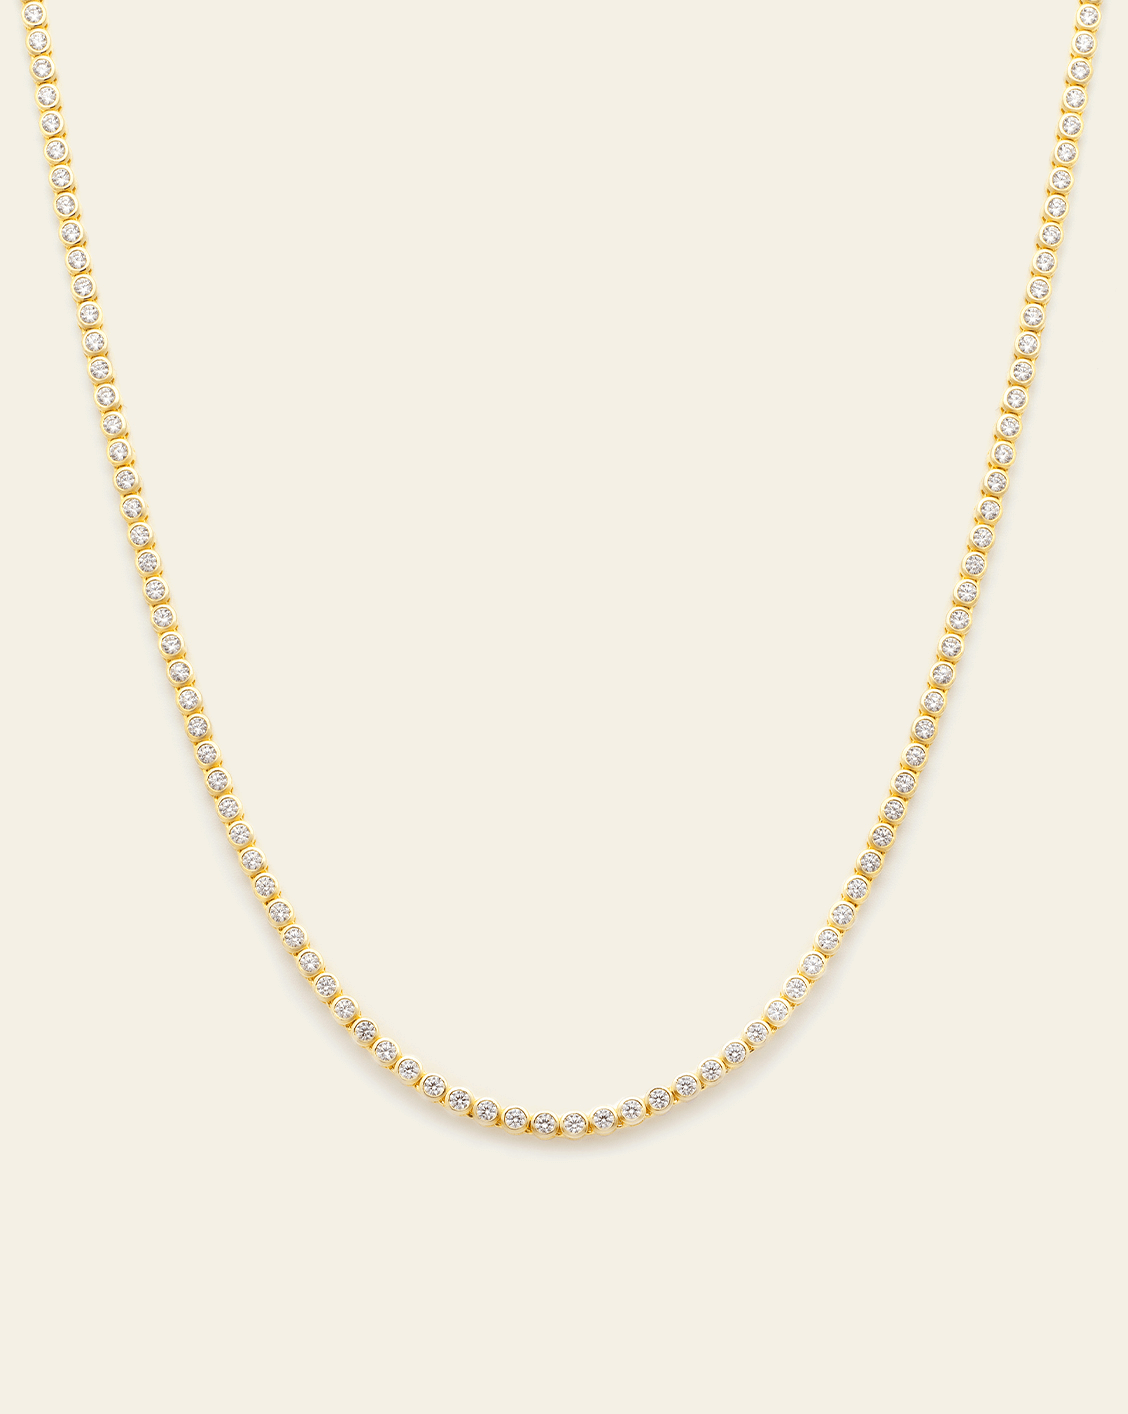 Petite Bezel Set Tennis Necklace - Gold Vermeil